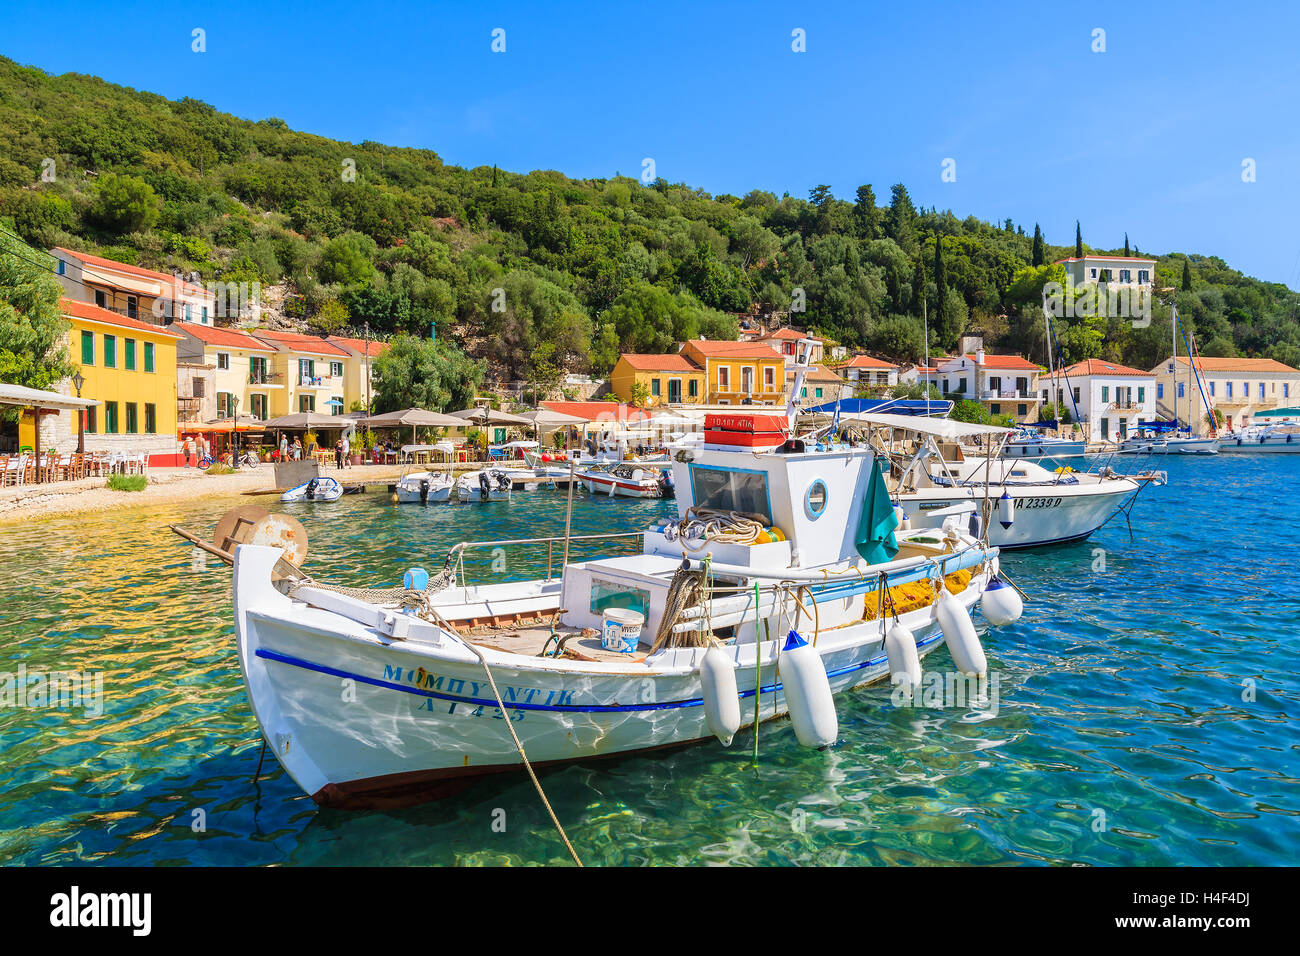 Kioni port, ithaka Insel - Sep 19, 2014: typische Fischerboot Liegeplatz in kioni Port. Griechische Inseln sind beliebtes Urlaubsziel. Stockfoto